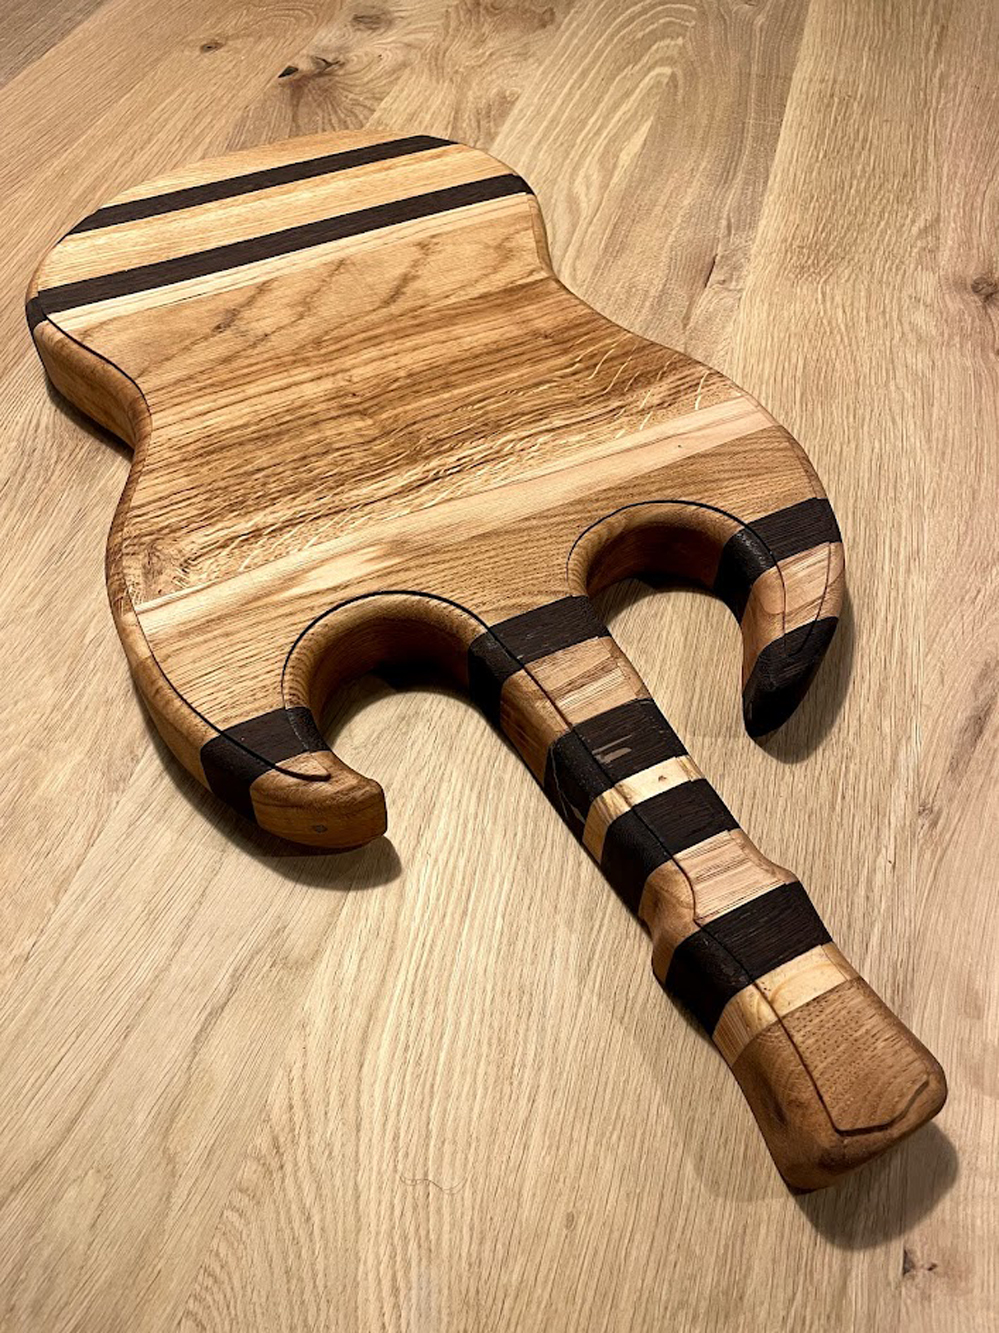 Tagliere in legno - Tagliere da cucina in legno per chitarra